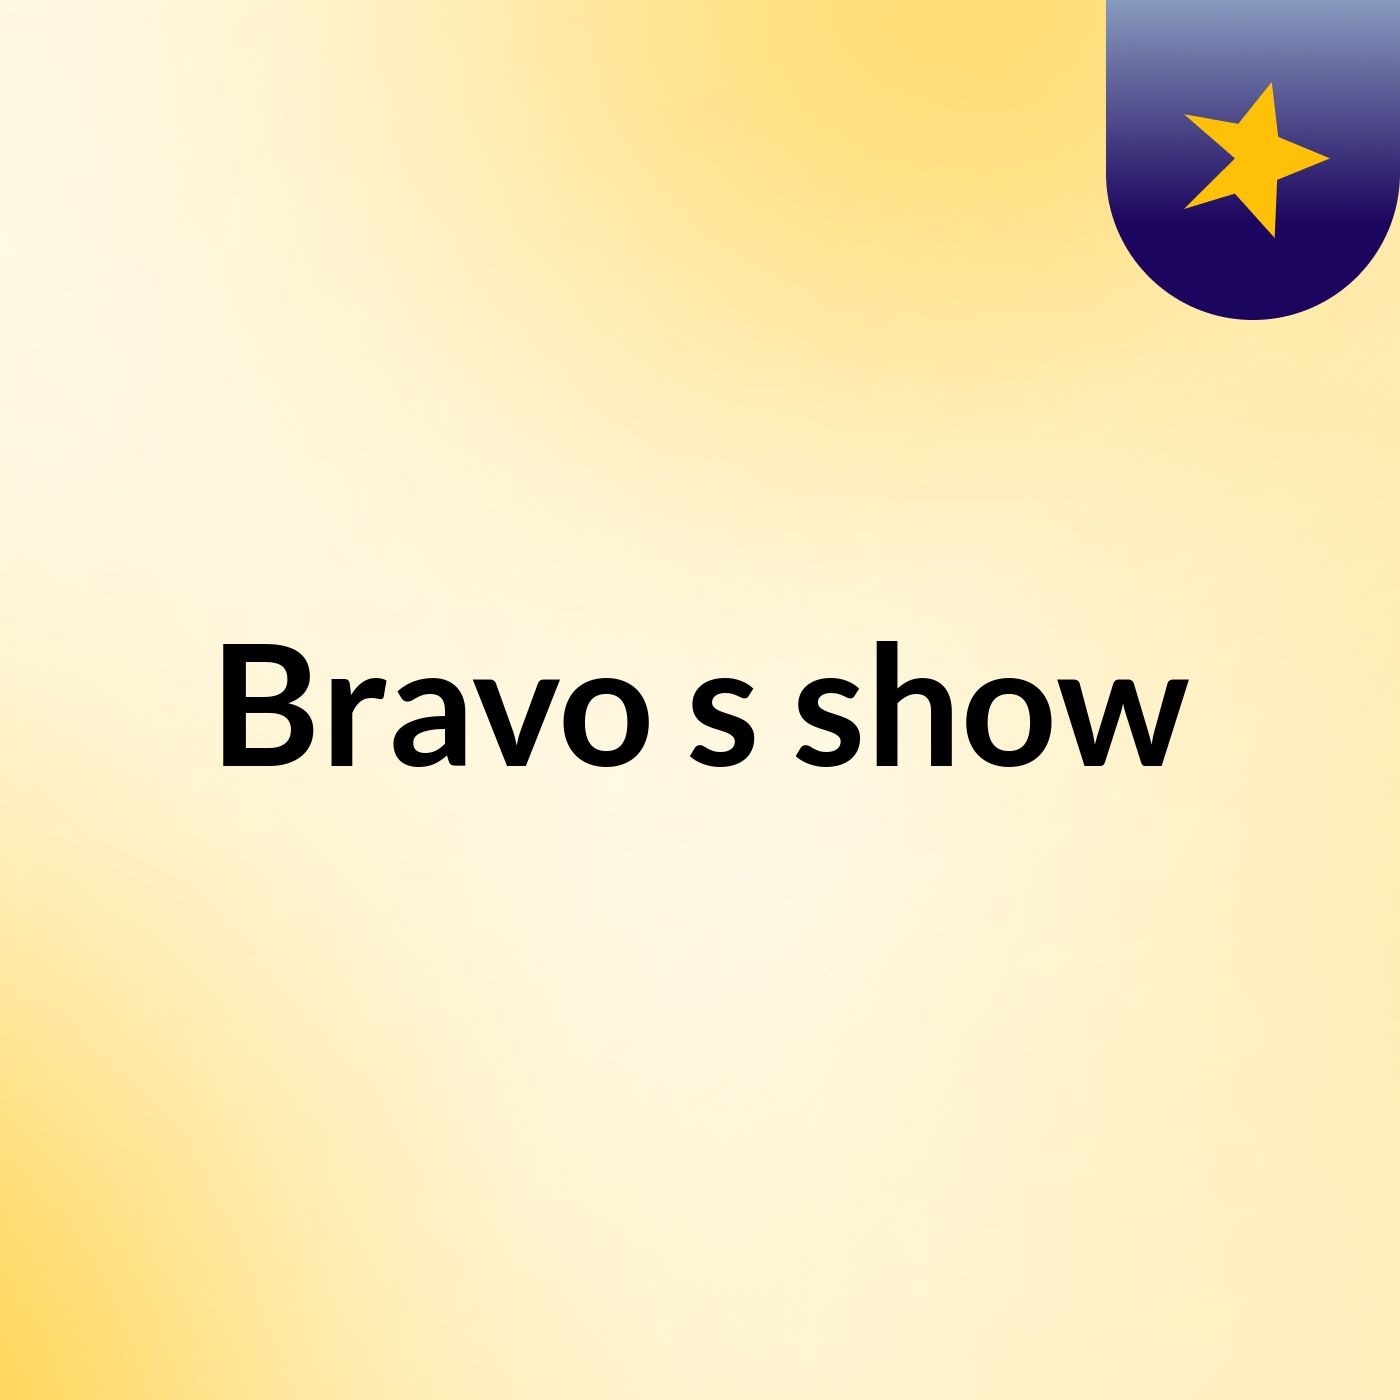 Bravo's show